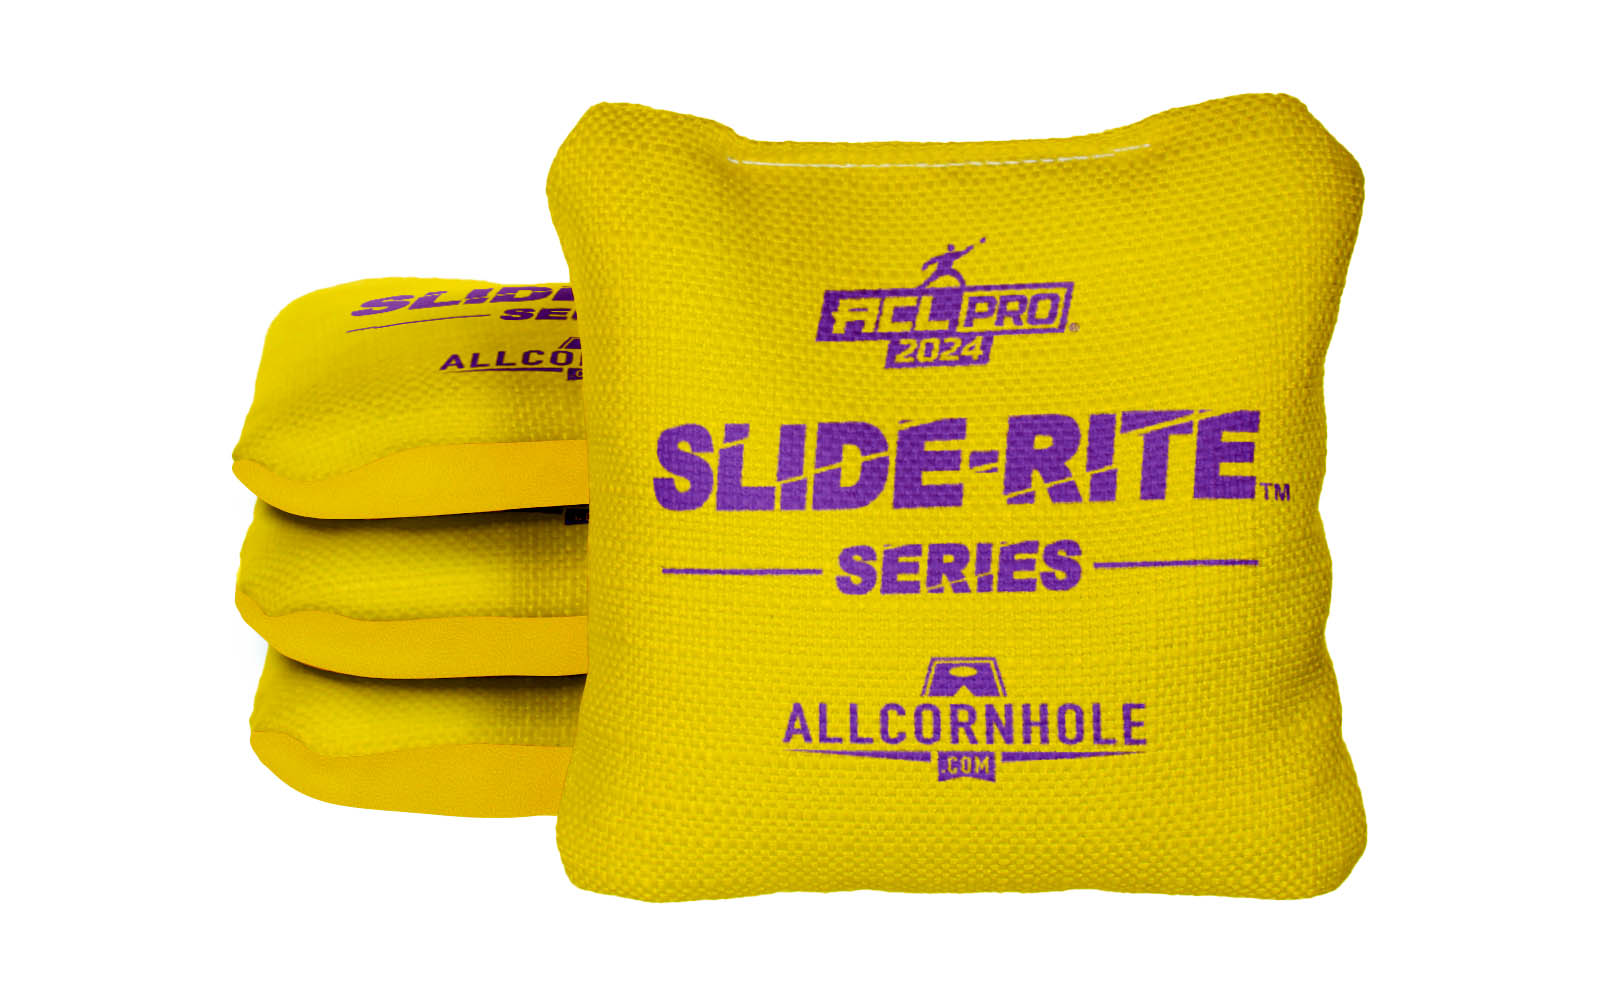 Officially Licensed Collegiate Cornhole Bags - AllCornhole Slide Rite - Set of 4 - East Carolina University